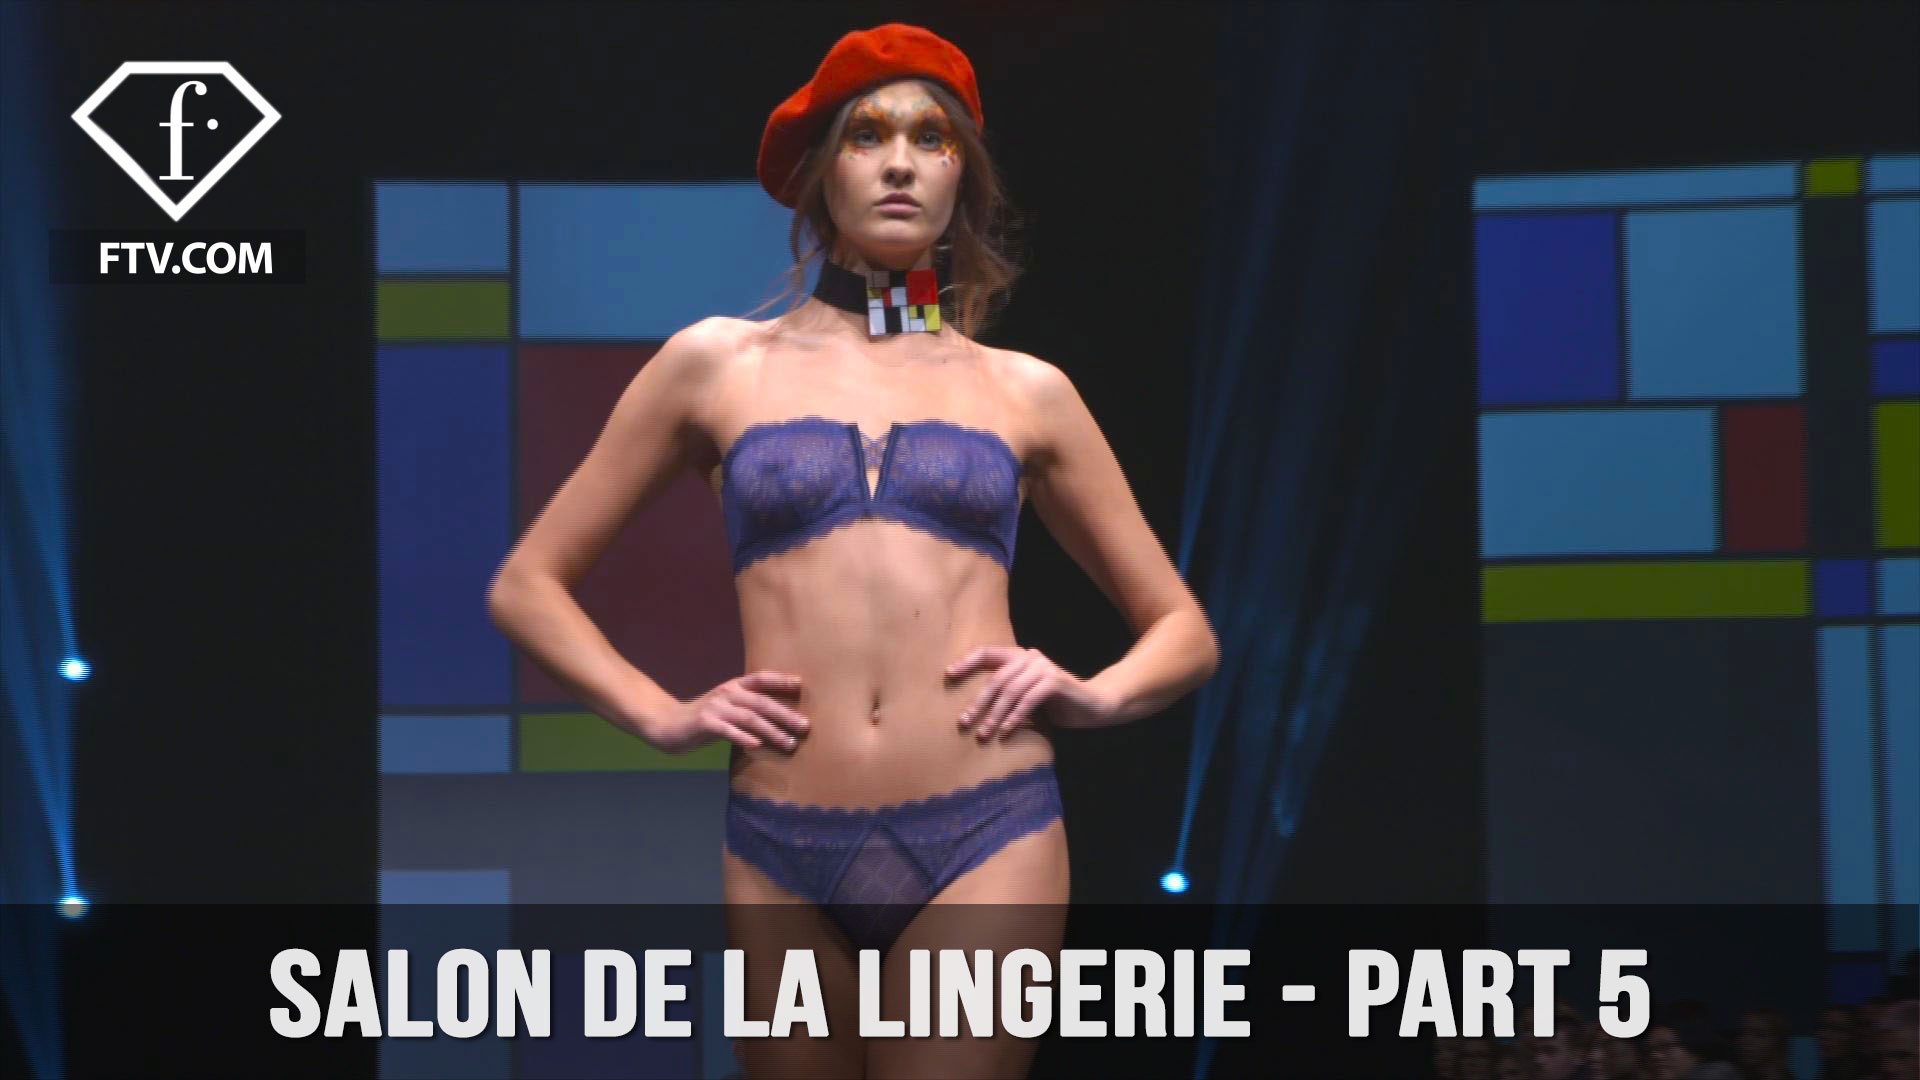 Salon de la lingerie - Part 5 | FTV.com - video Dailymotion